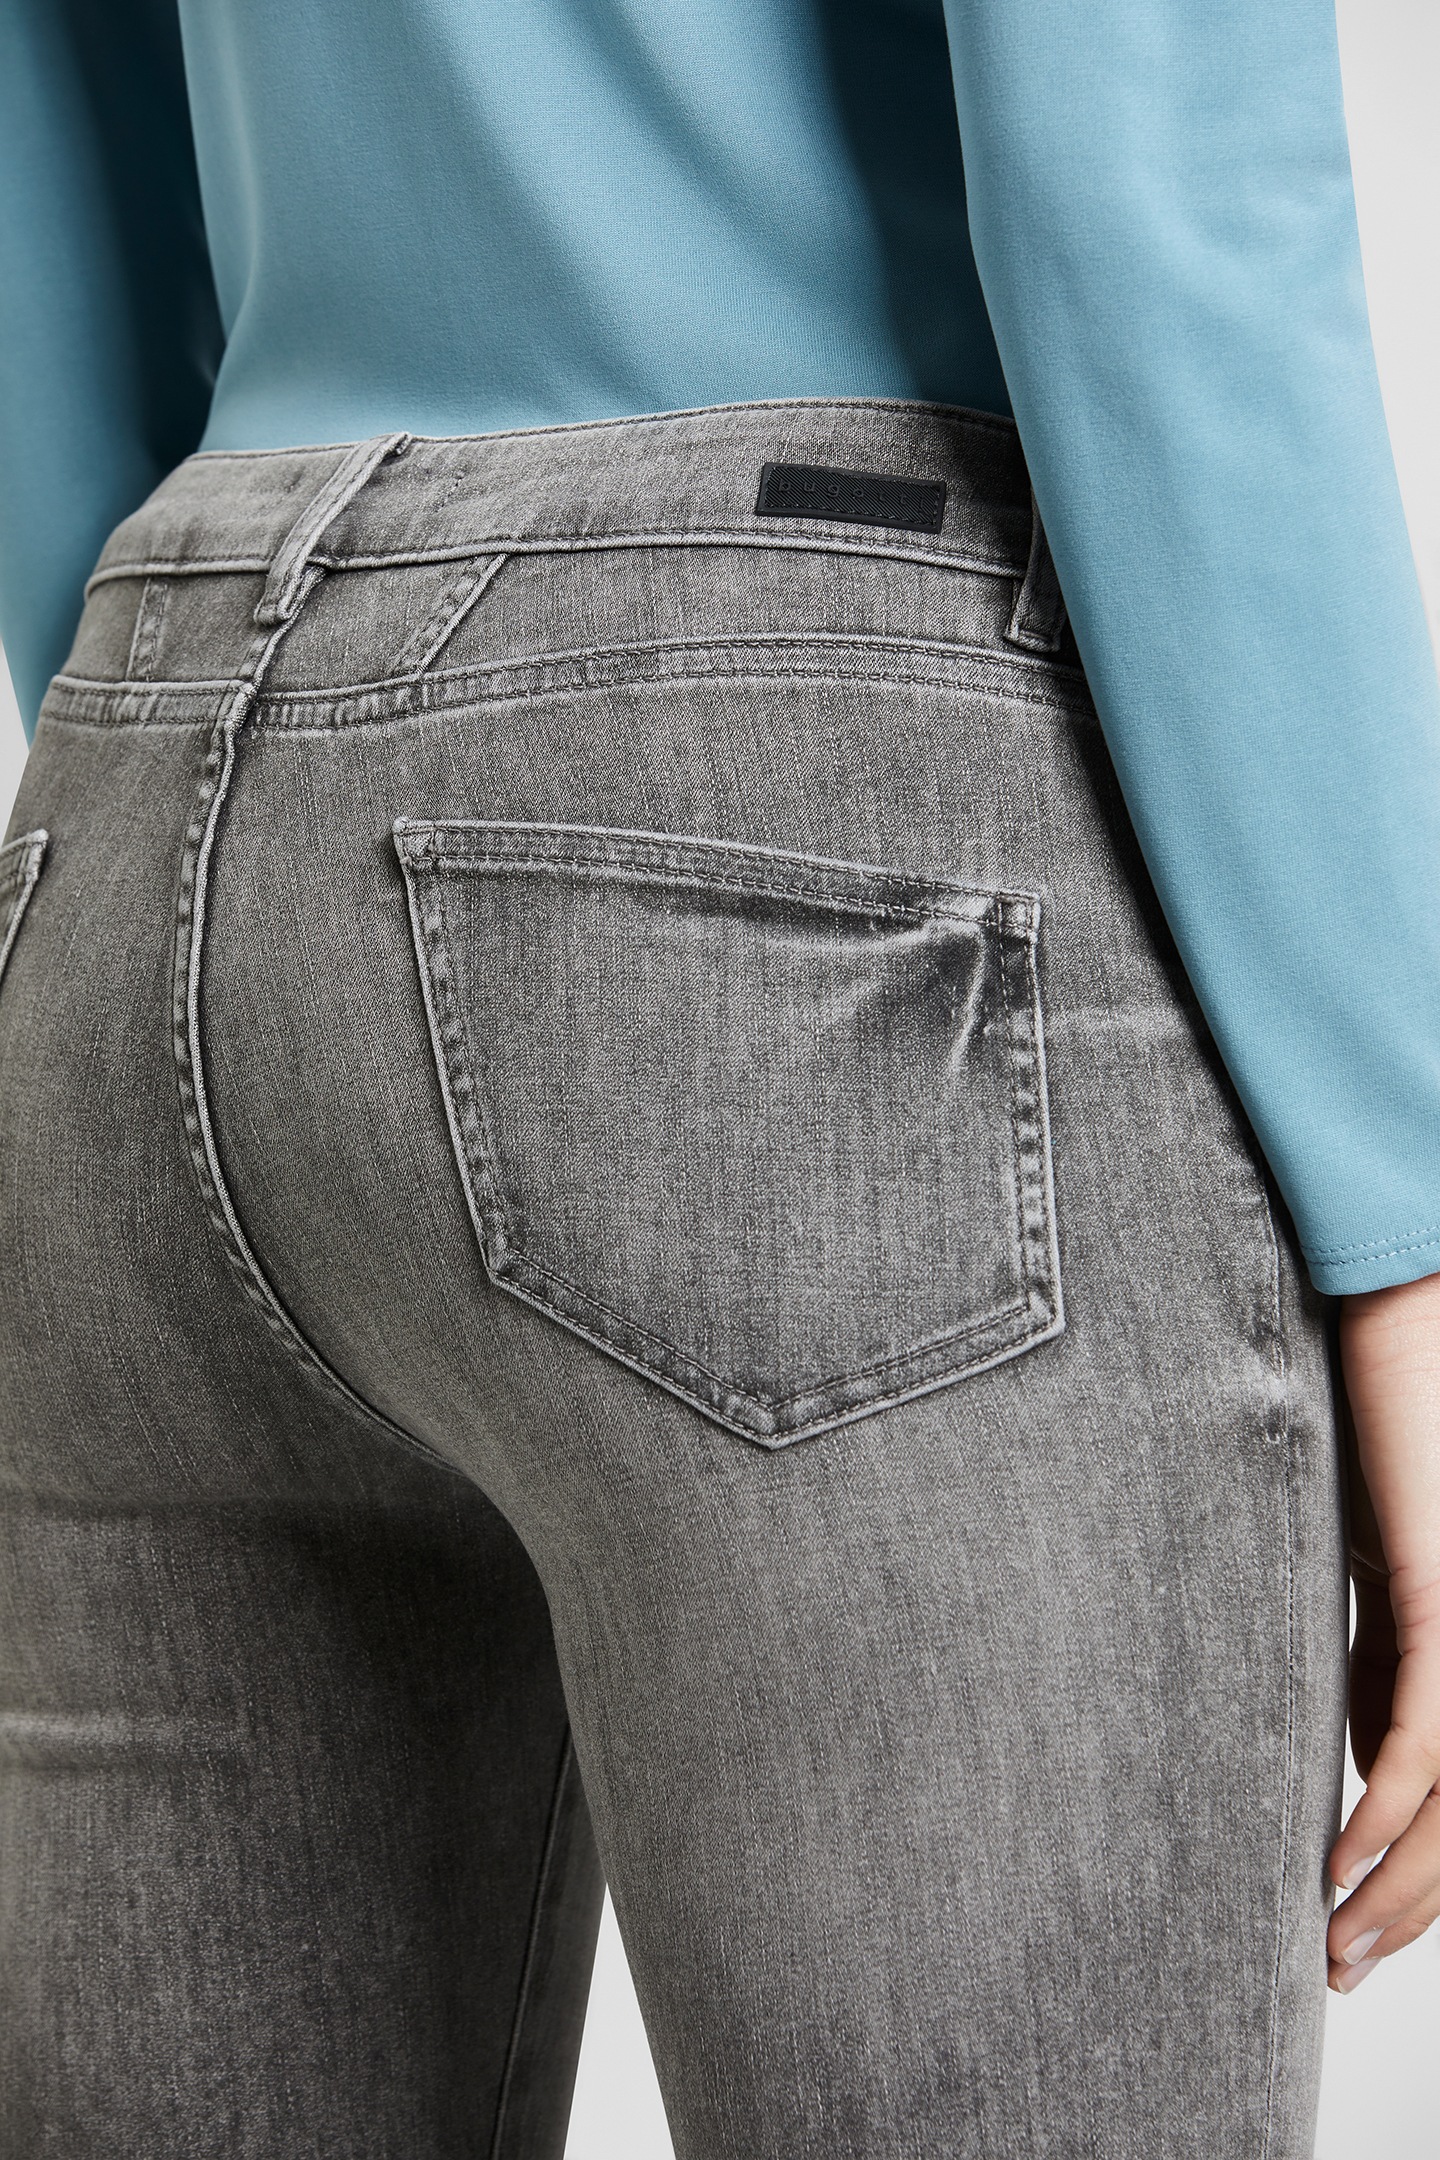 Neu in dieser Saison! bugatti 5-Pocket-Jeans, online leichte Used-Waschung